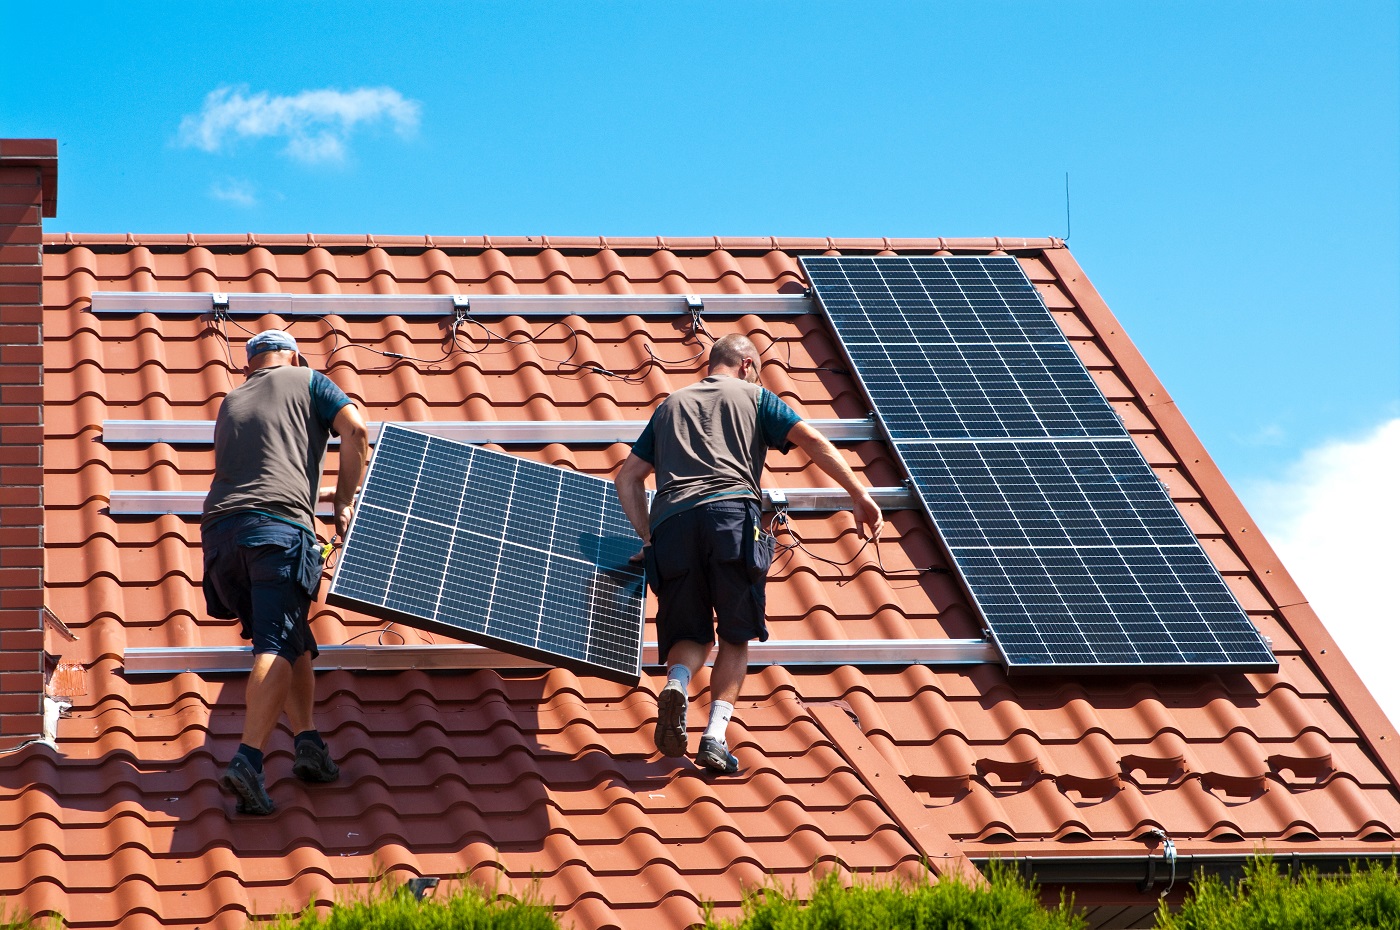 Zwei Solarteure bei der Befestigung einer Photovoltaikanlage auf einem Hausdach.